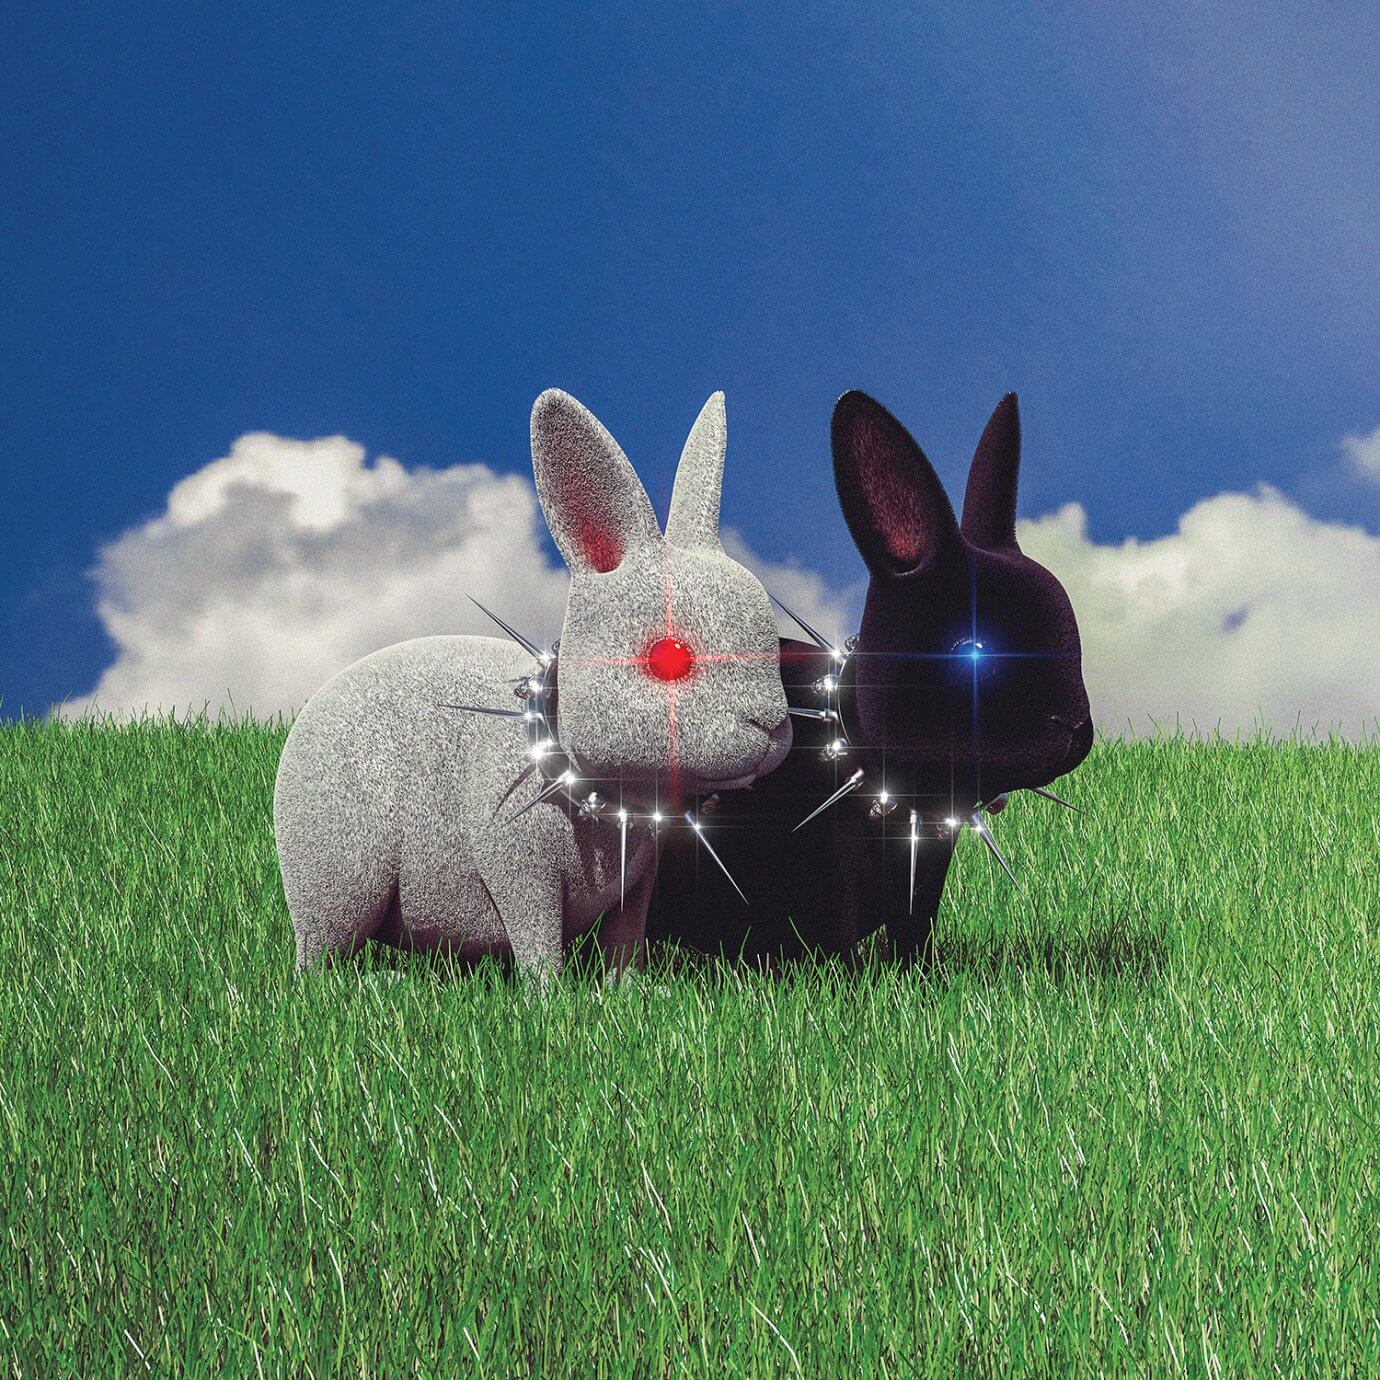 Isaiah Worrington digital art with 2 bunnies